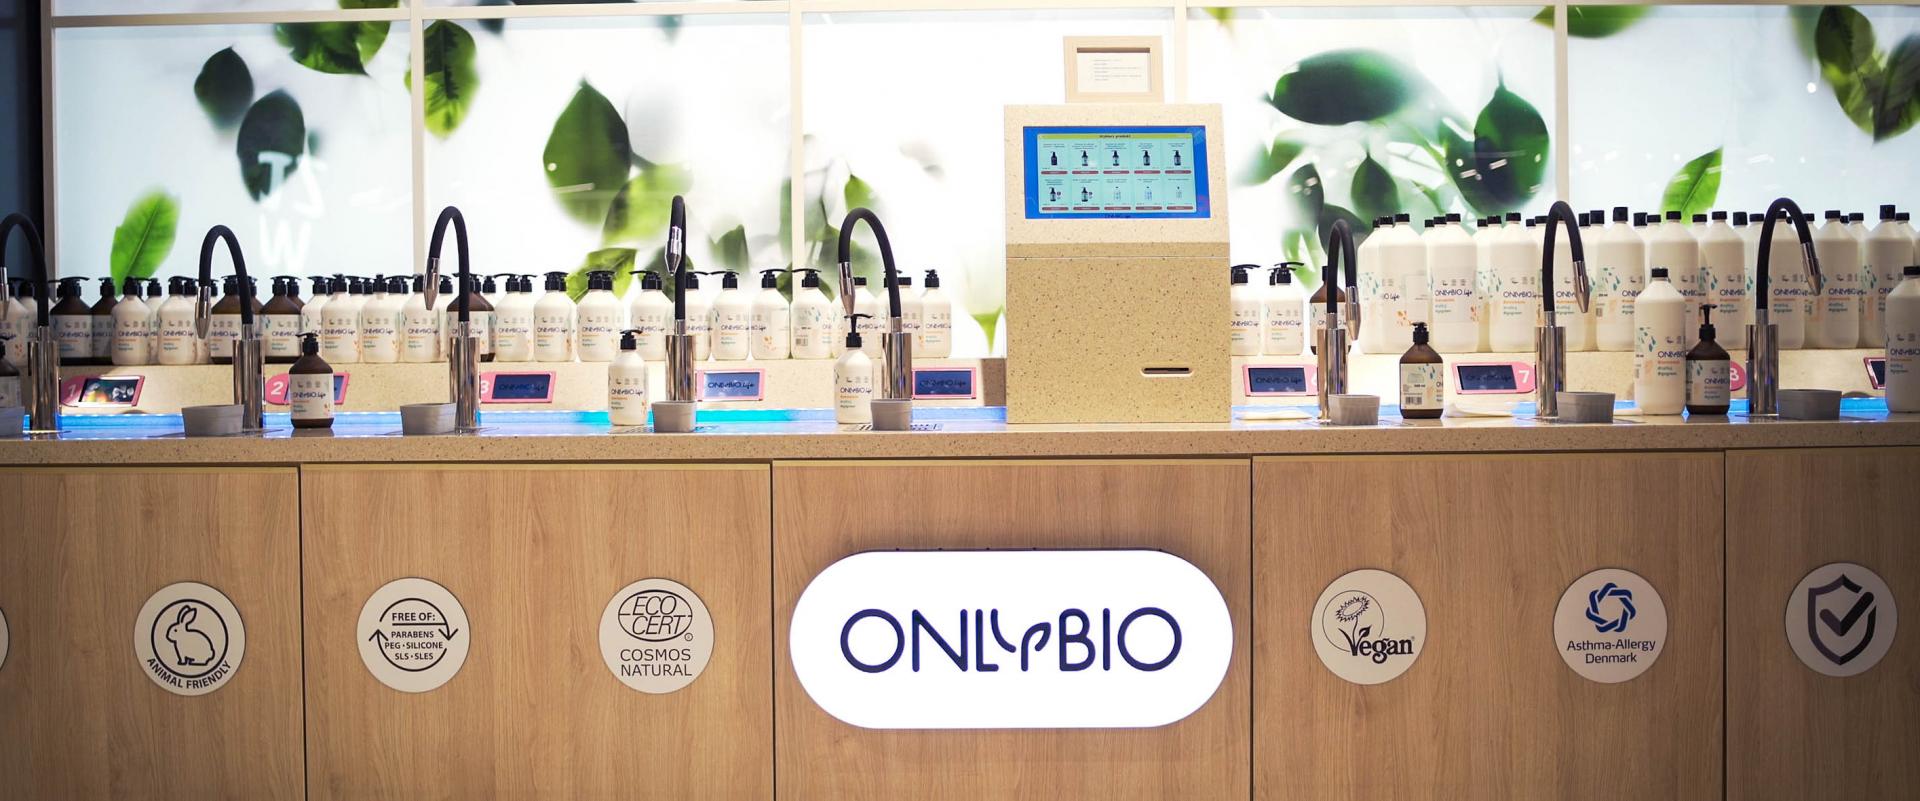 OnlyBio.life uruchamia licznik zaoszczędzonych butelek